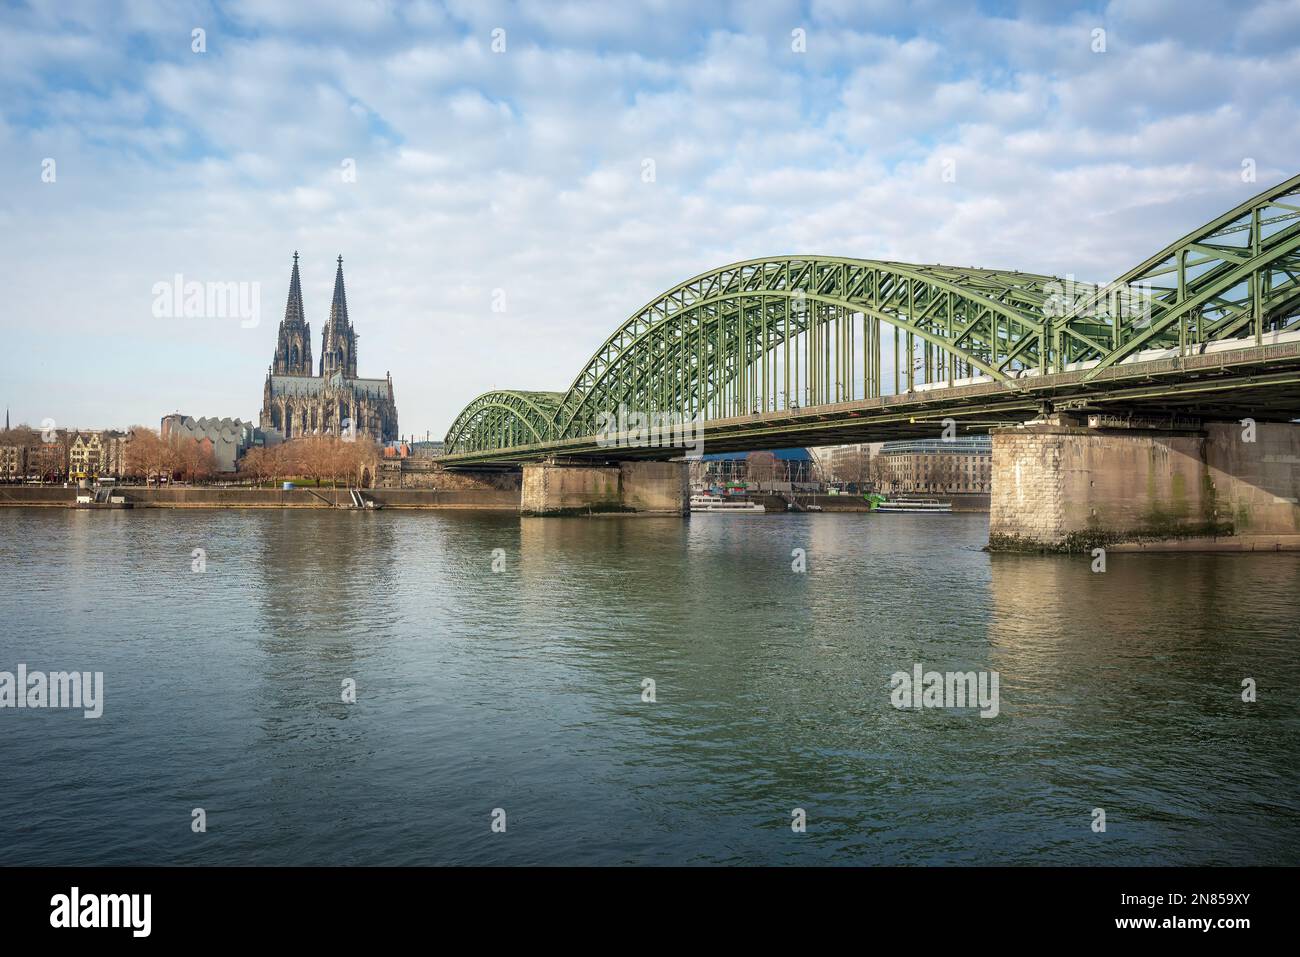 Kölner Skyline mit Dom und Hohenzollernbrücke - Köln, Deutschland Stockfoto